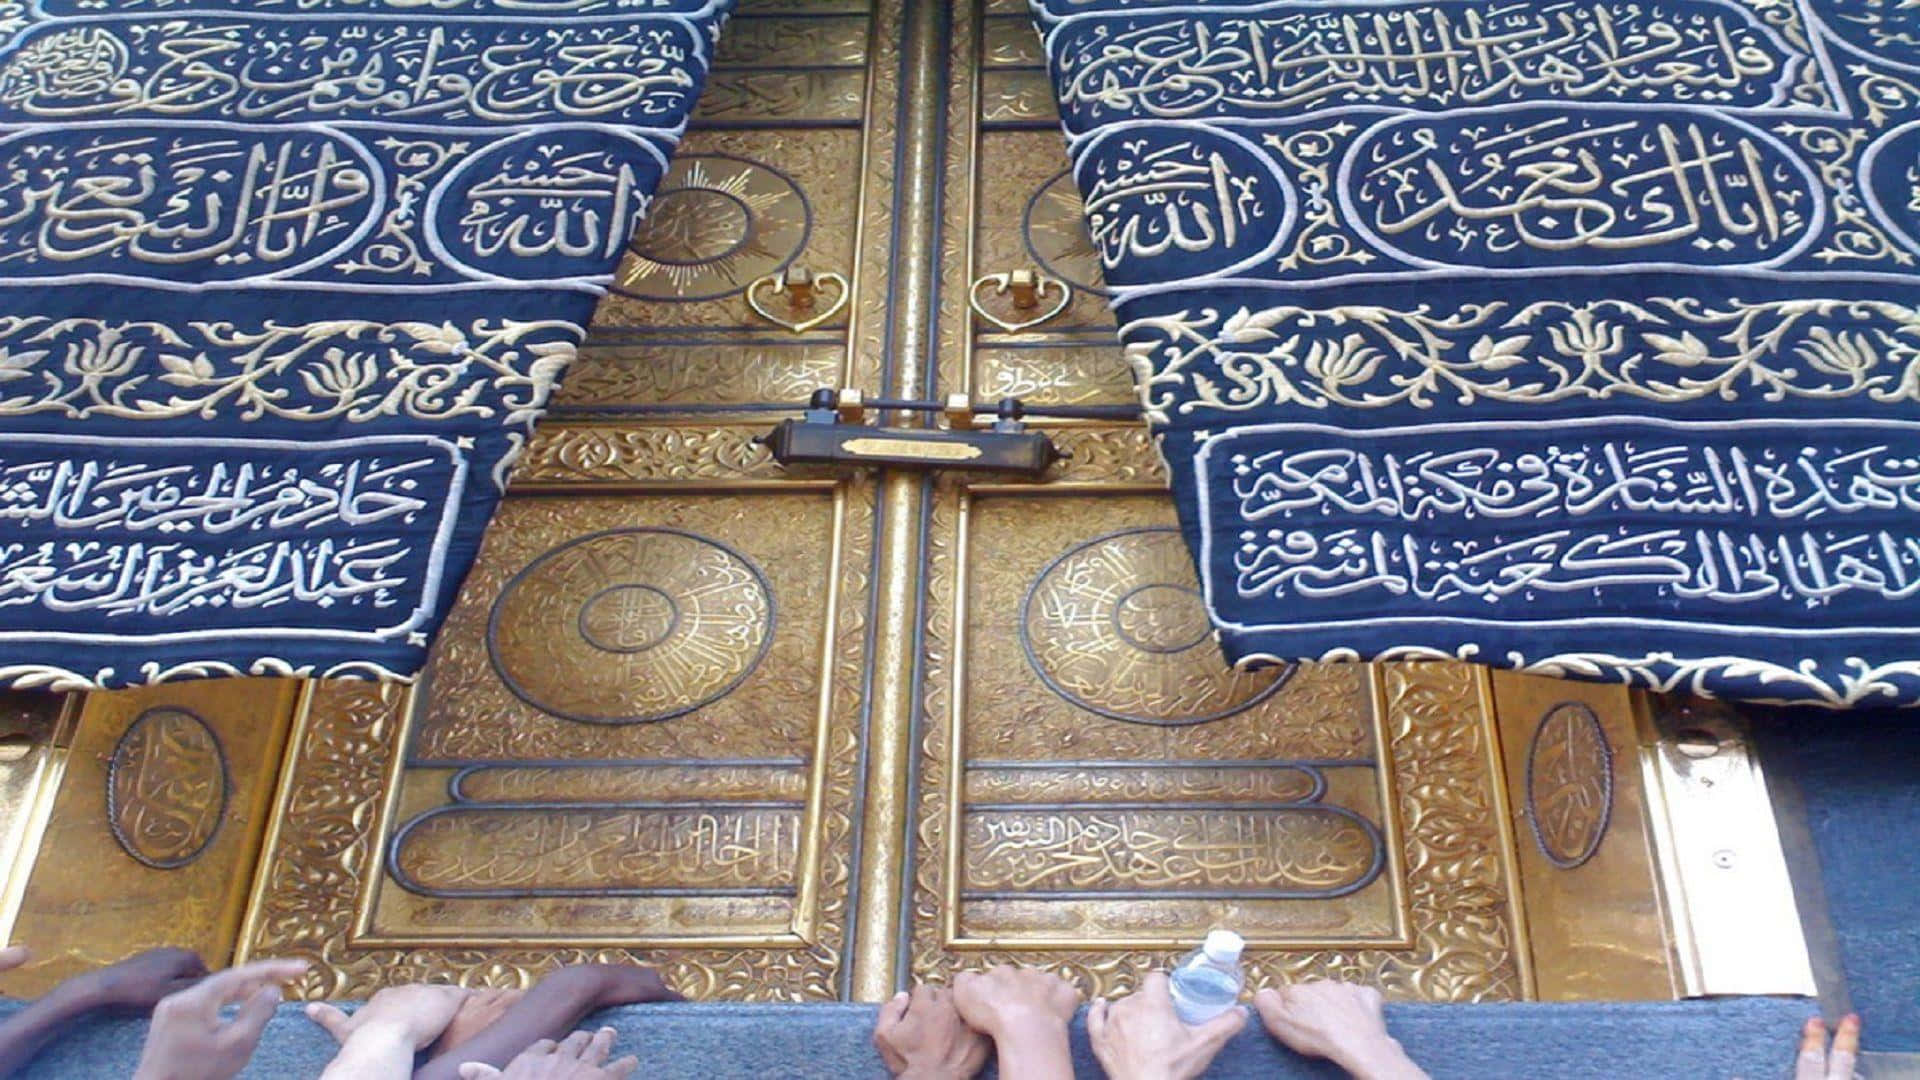 The decorated Kaaba in Mecca, Saudi Arabia.